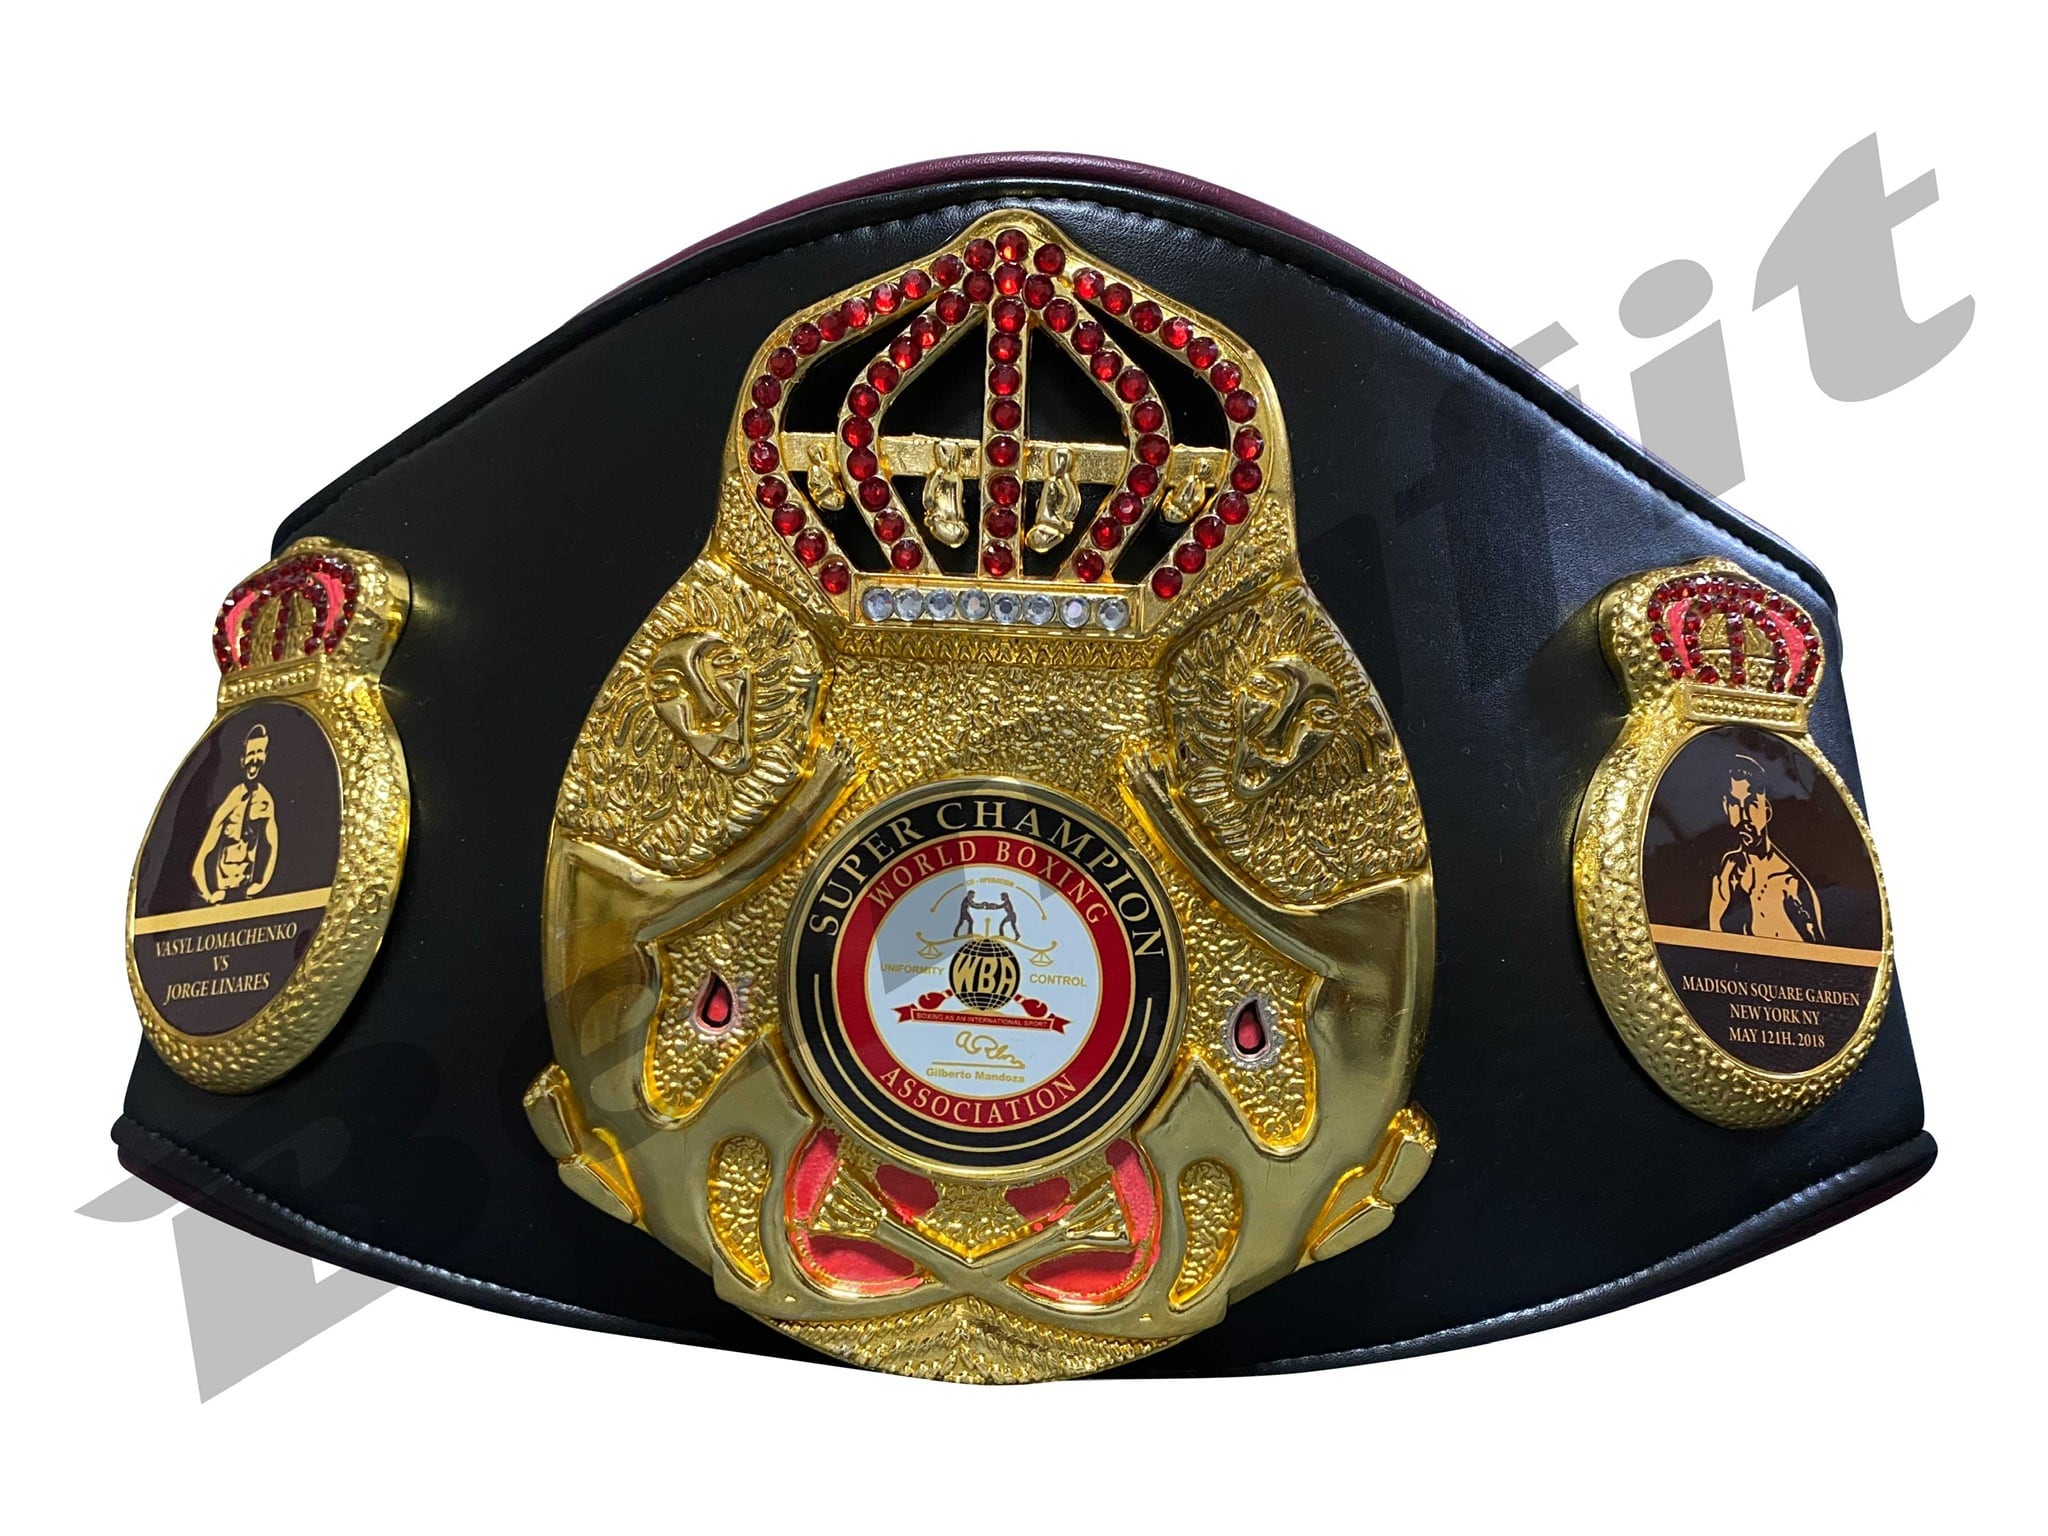 ボクシング WBCチャンピオンベルトレプリカその他スポーツ - ボクシング